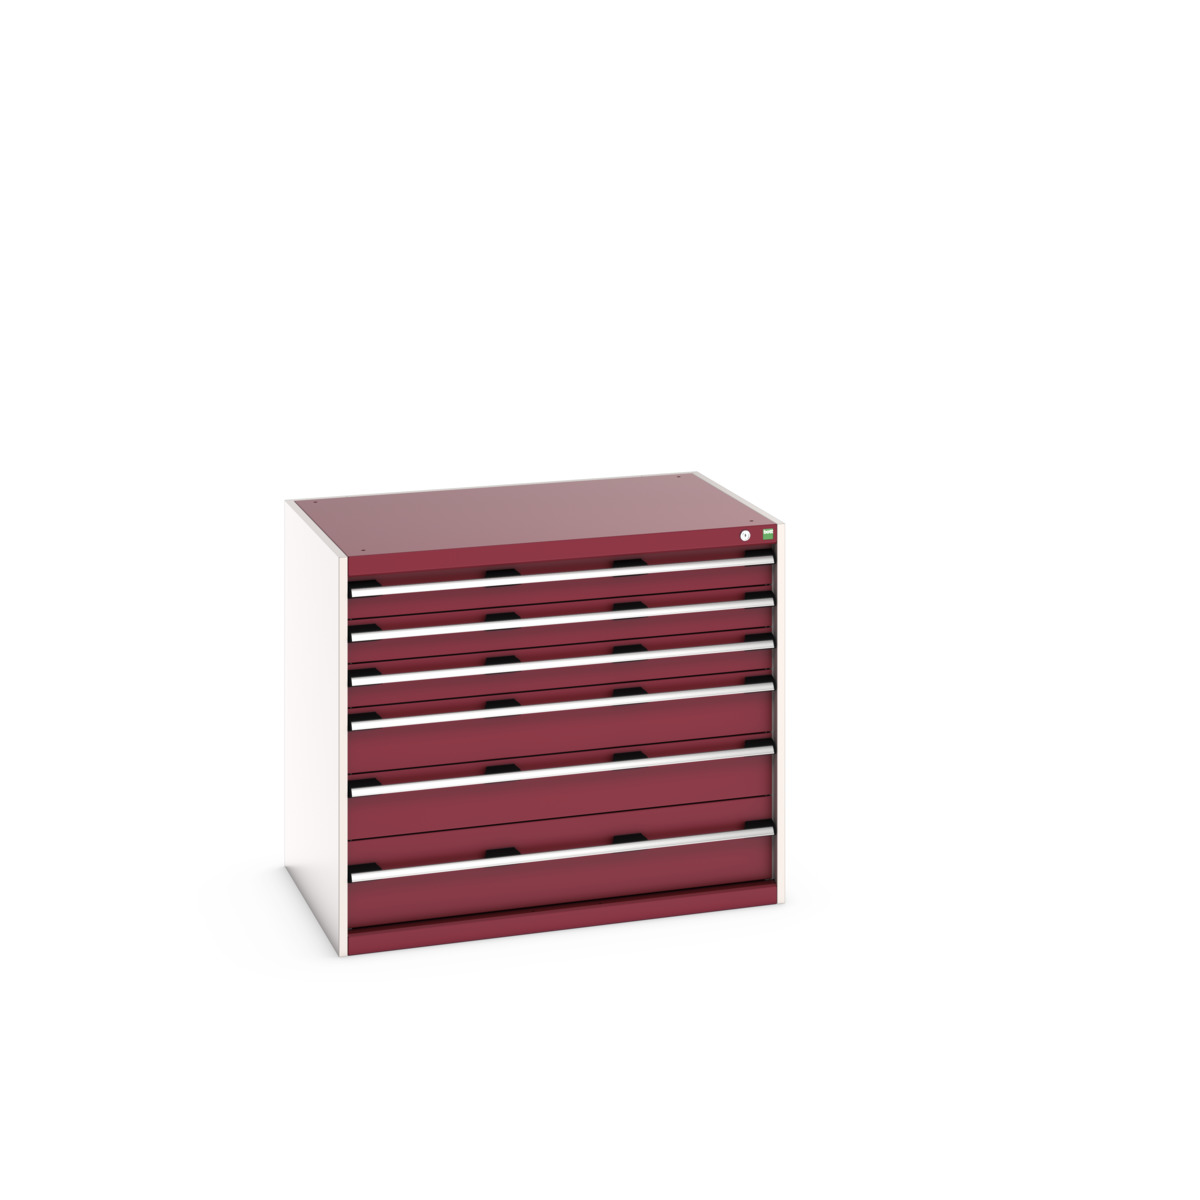 40029103.24V - cubio drawer cabinet